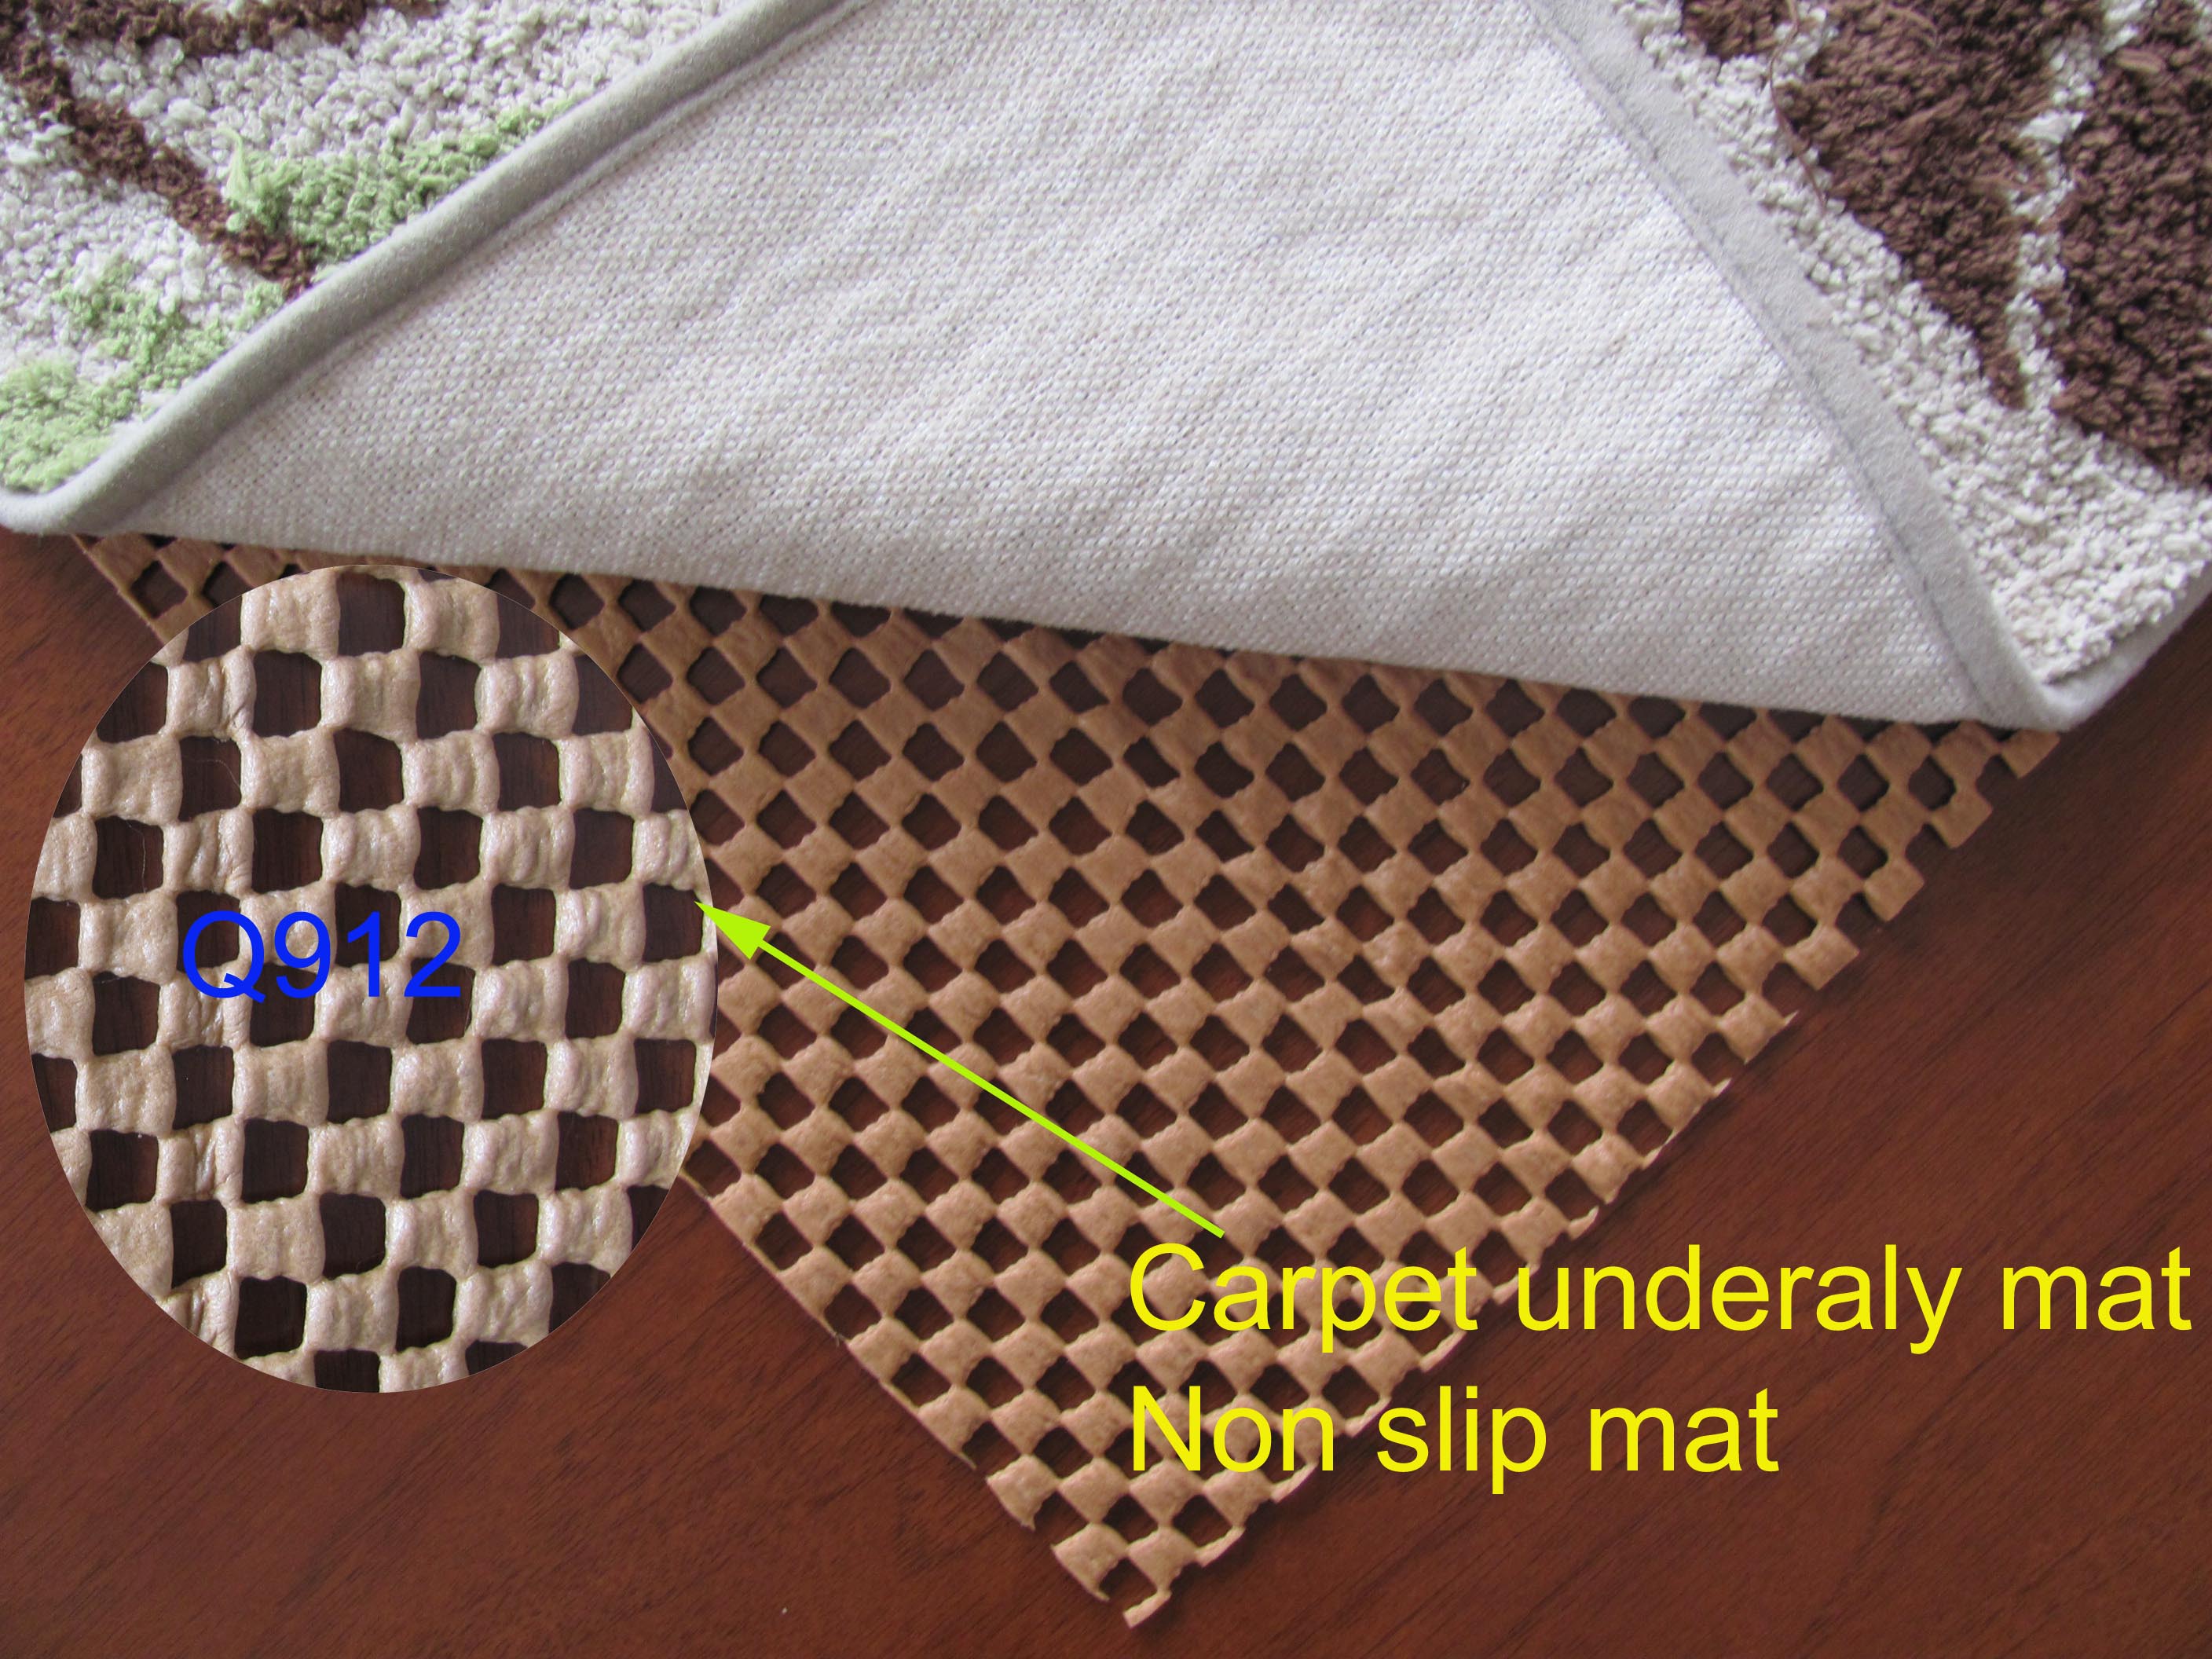 Base de alfombra antideslizante para uso doméstico